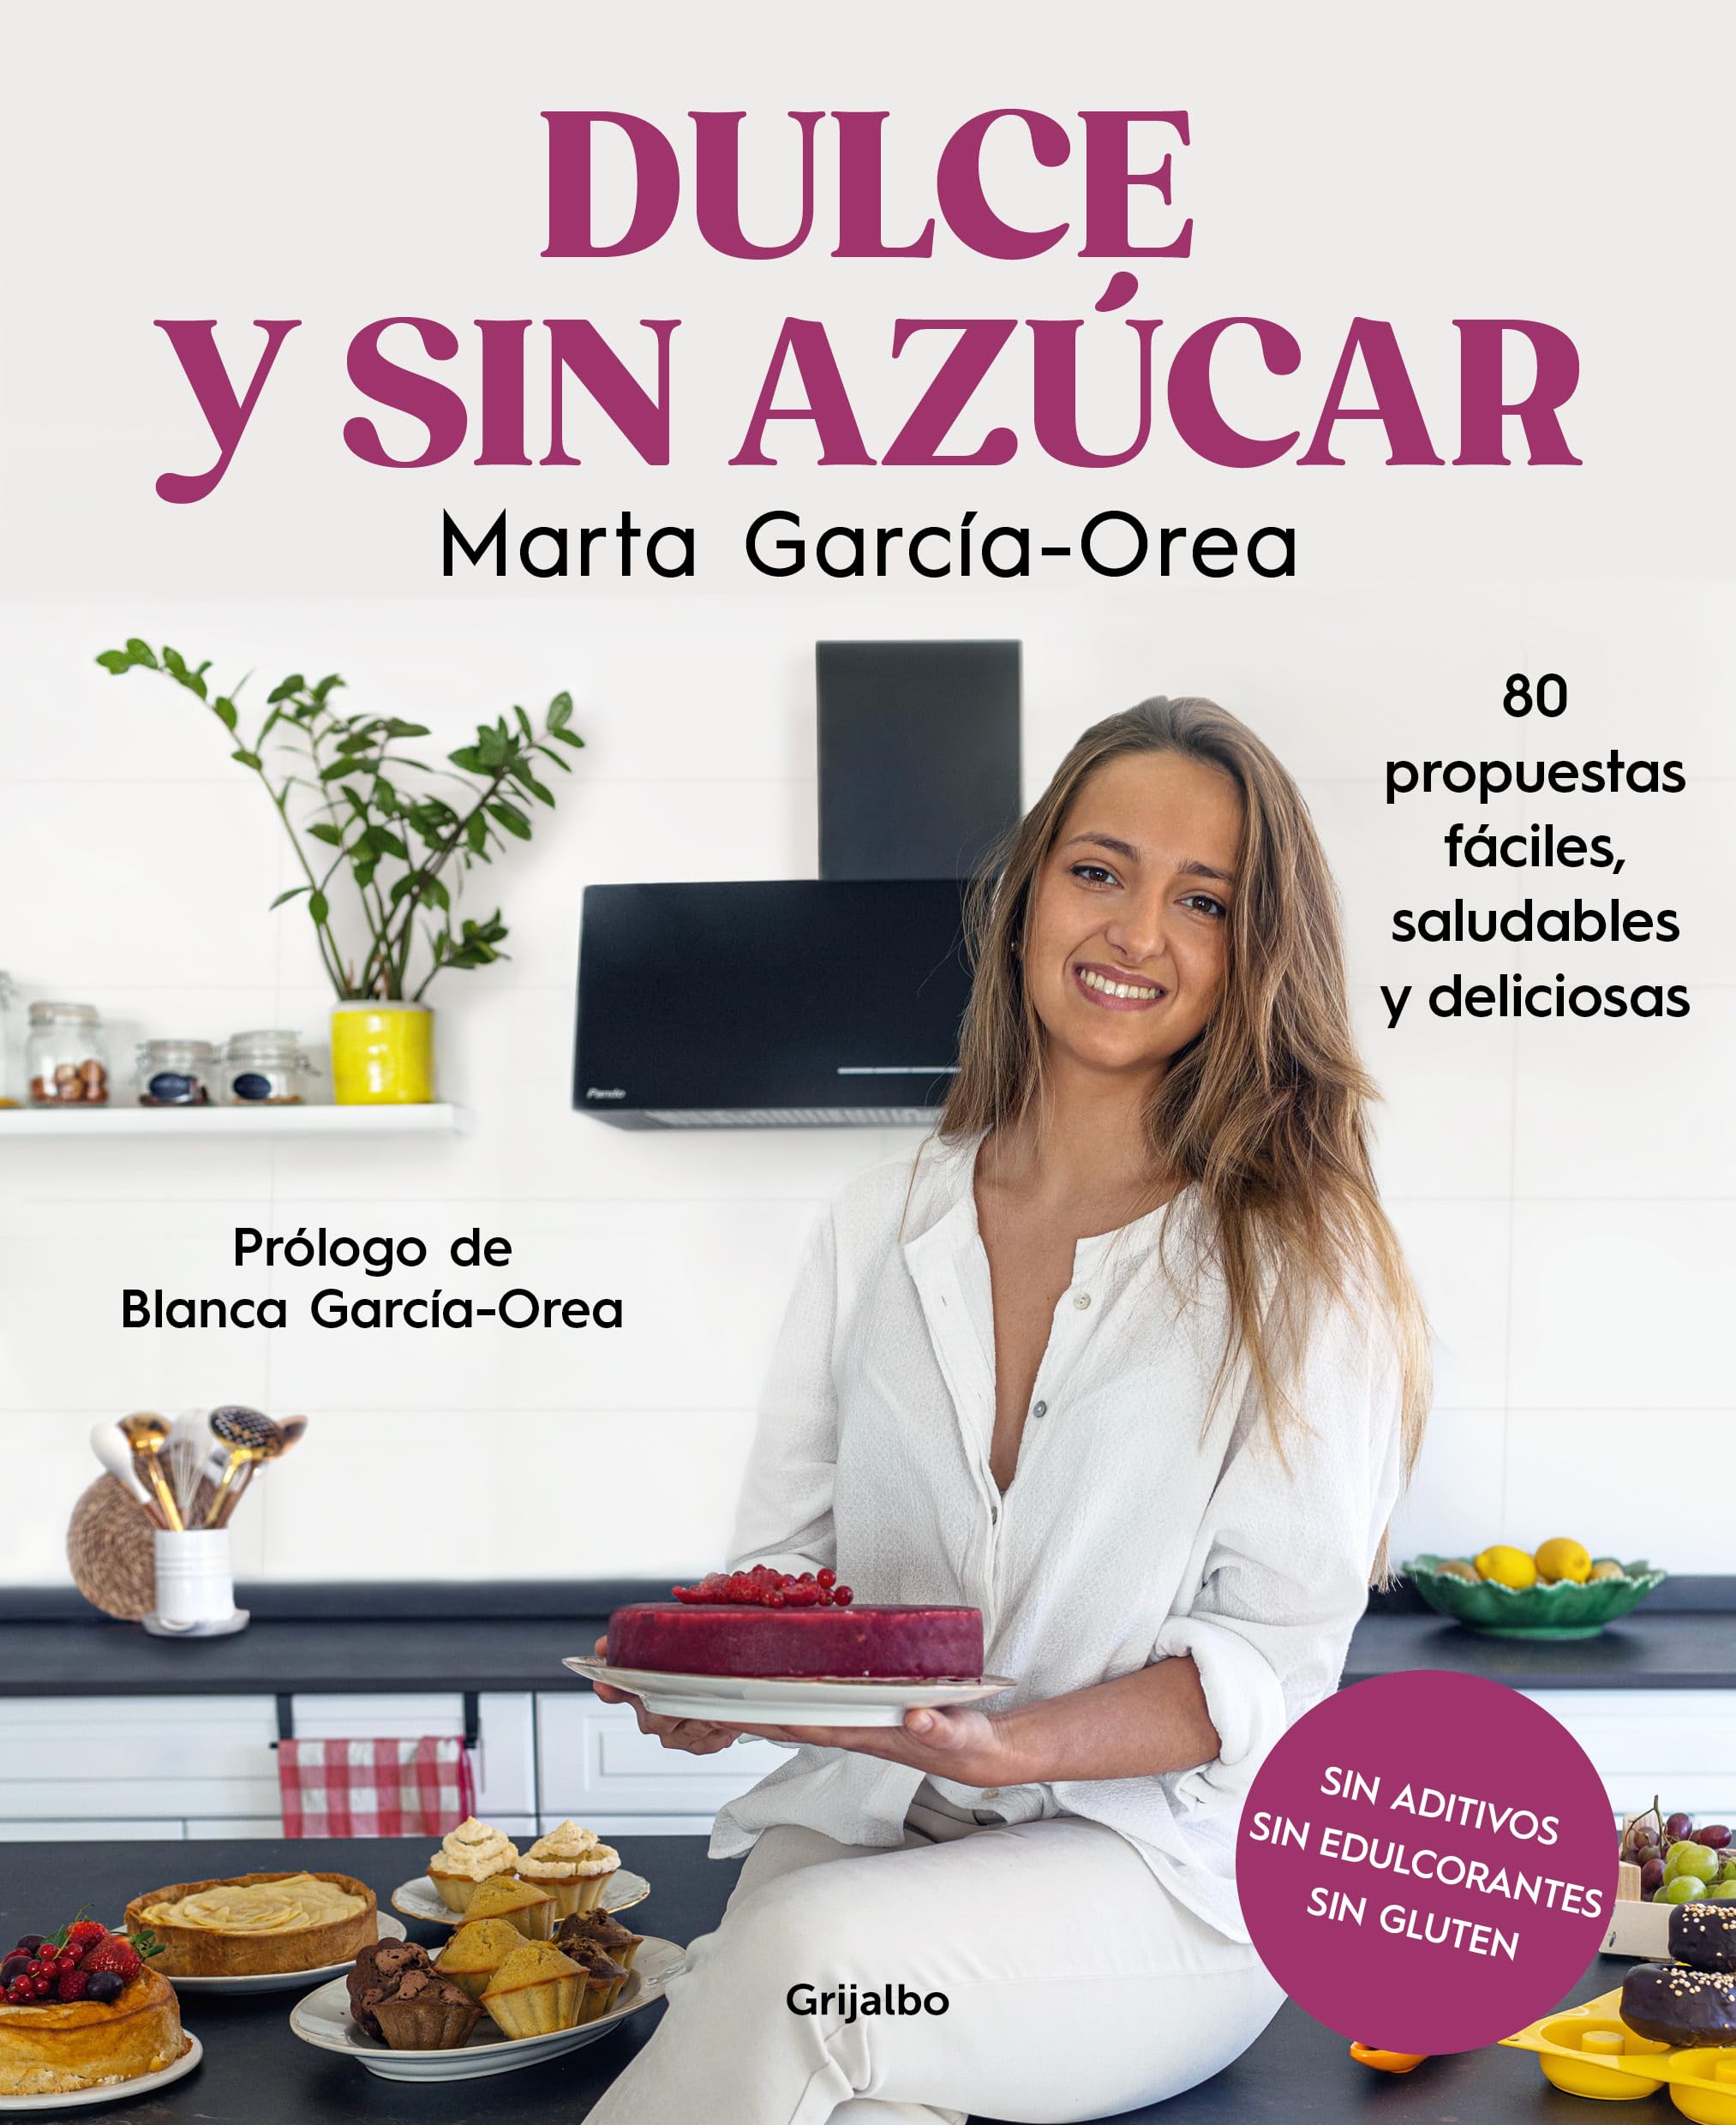 Dulce y sin azúcar: 80 propuestas fáciles, saludables y deliciosas. Sin azúcar, sin edulcorantes, sin gluten (Spanish Edition)